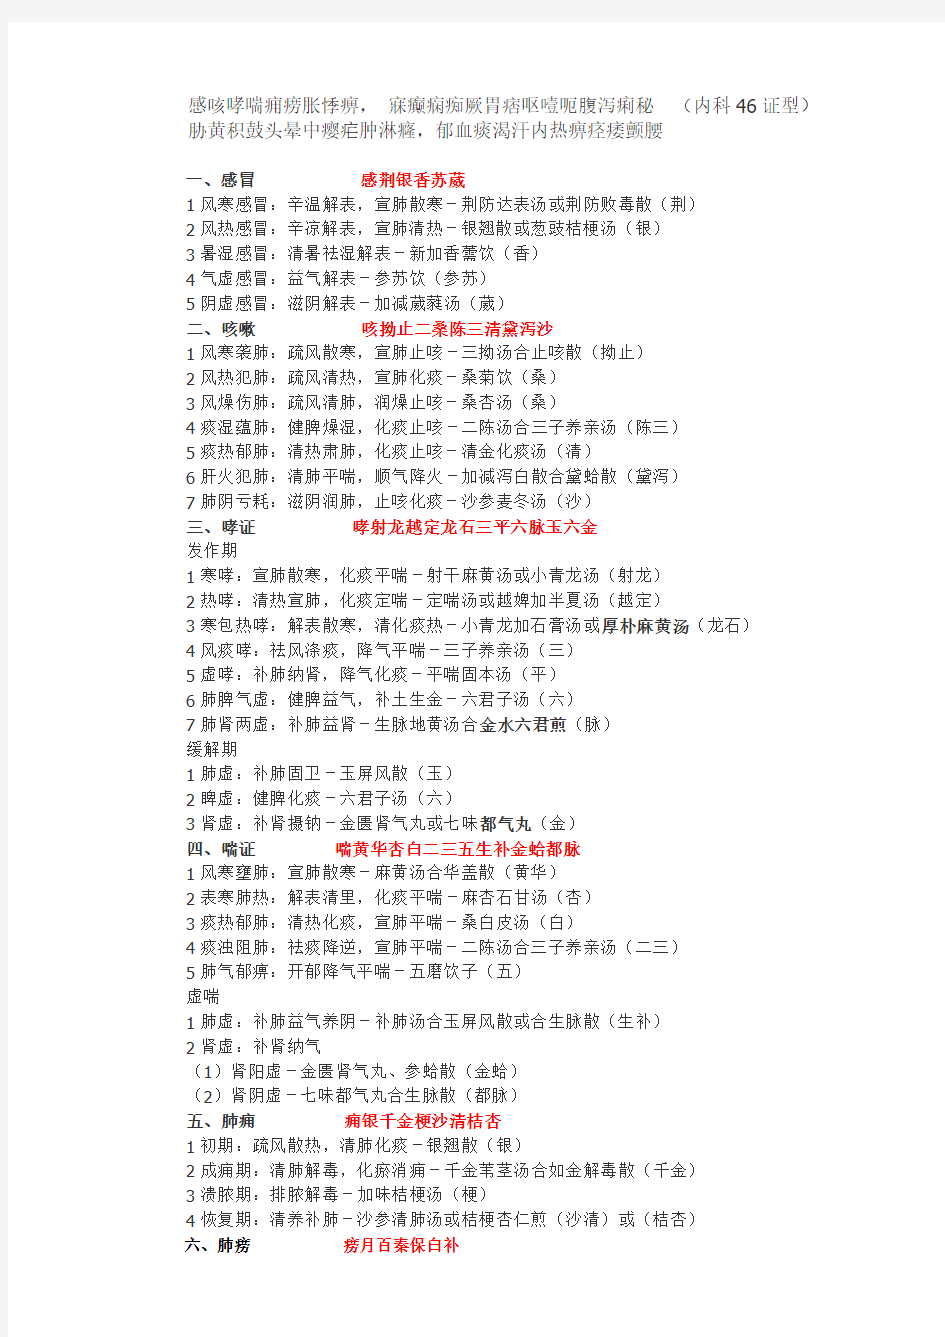 中医内科学 记忆 修改版2012年2月第三版[1]